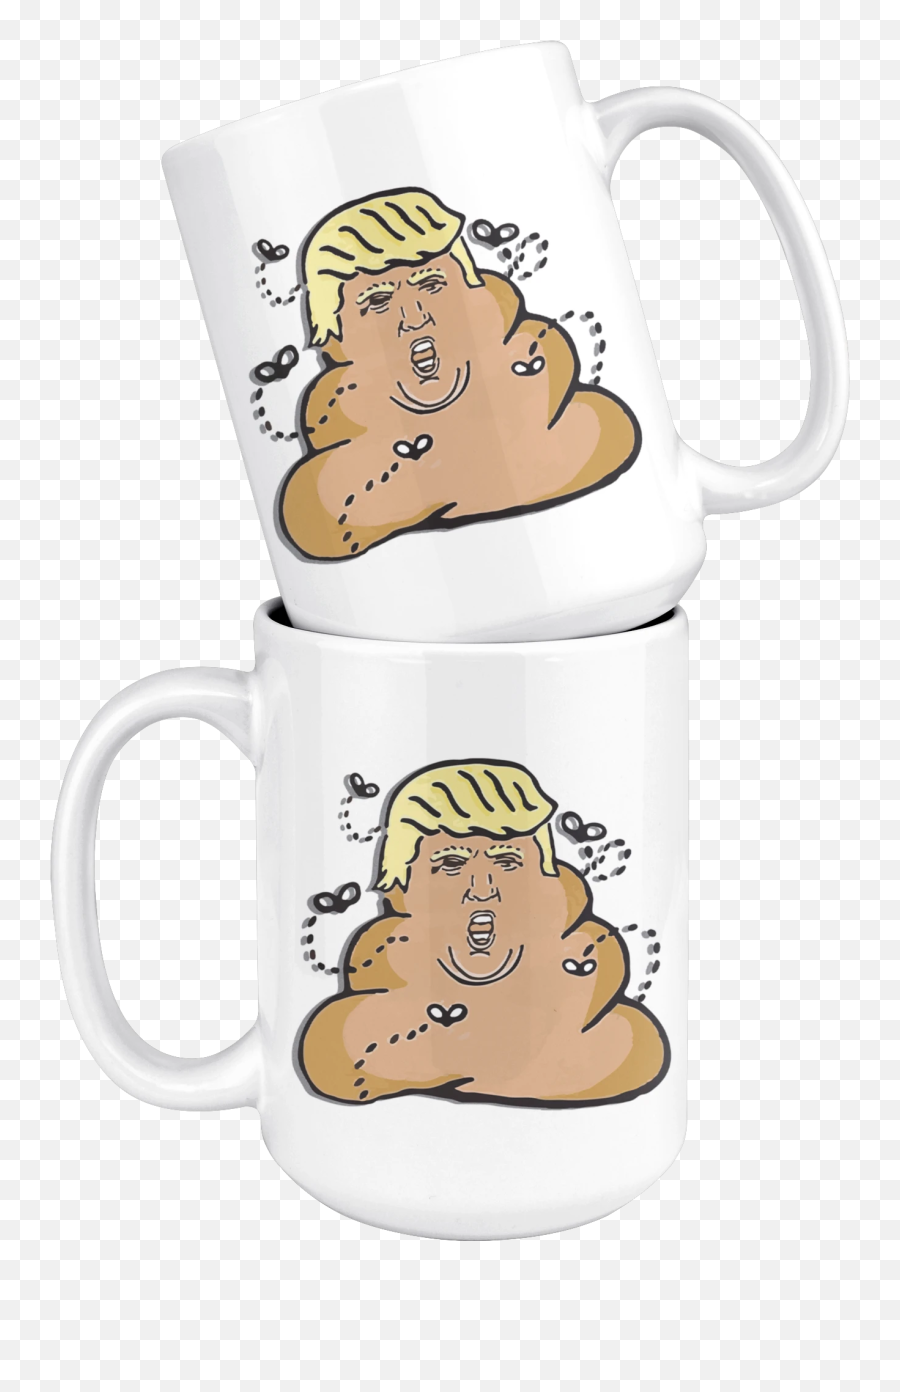 Trump Poop Emoji - Cartoon,Croissant Emoji